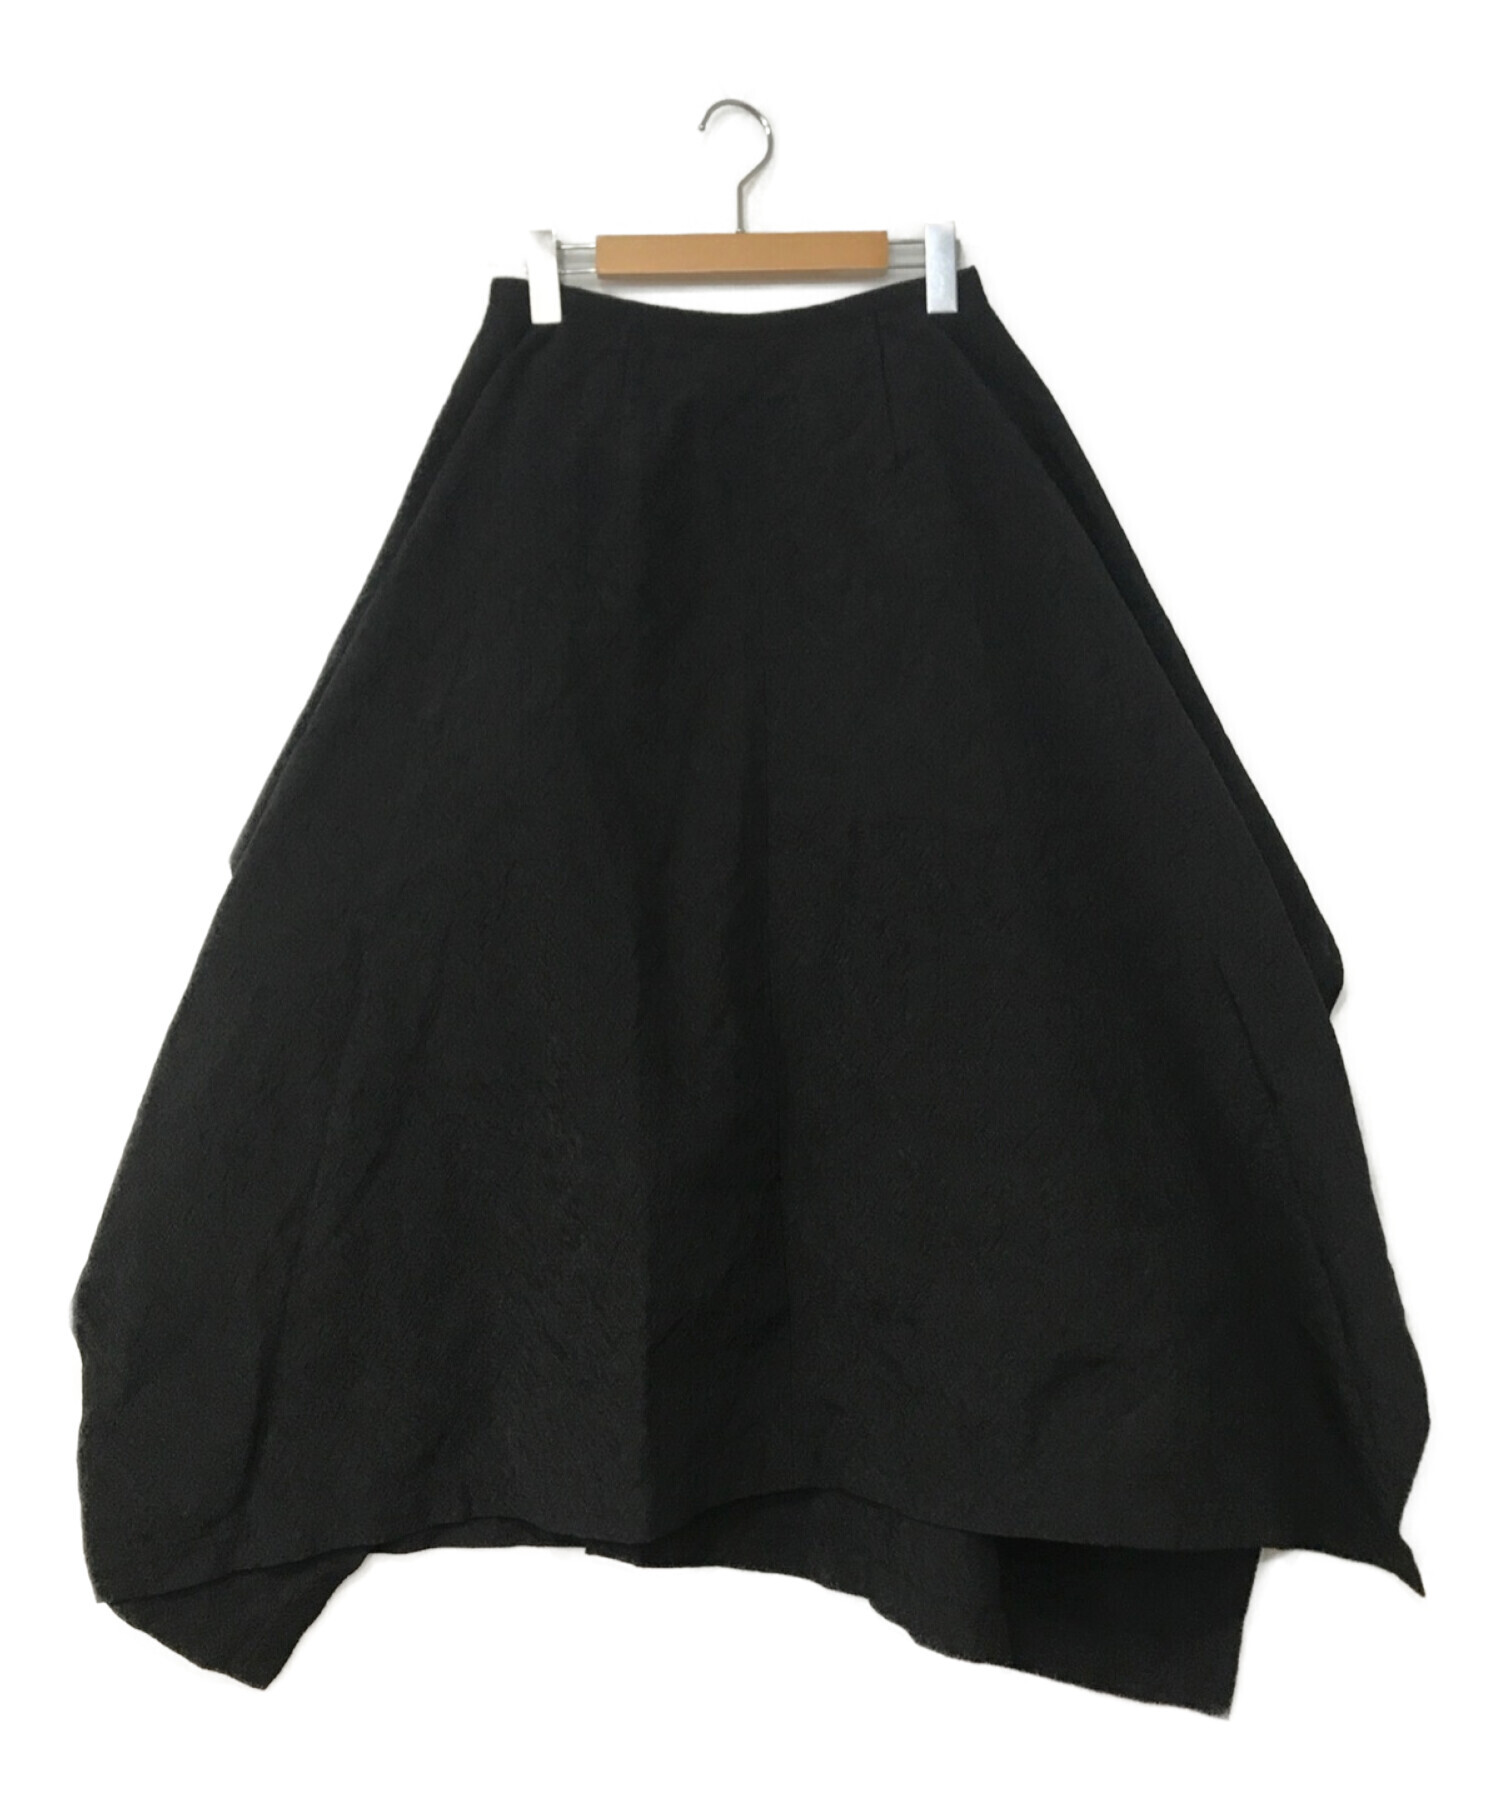 19,900円ブラック コムデギャルソン 20AW フィルタークロススカート